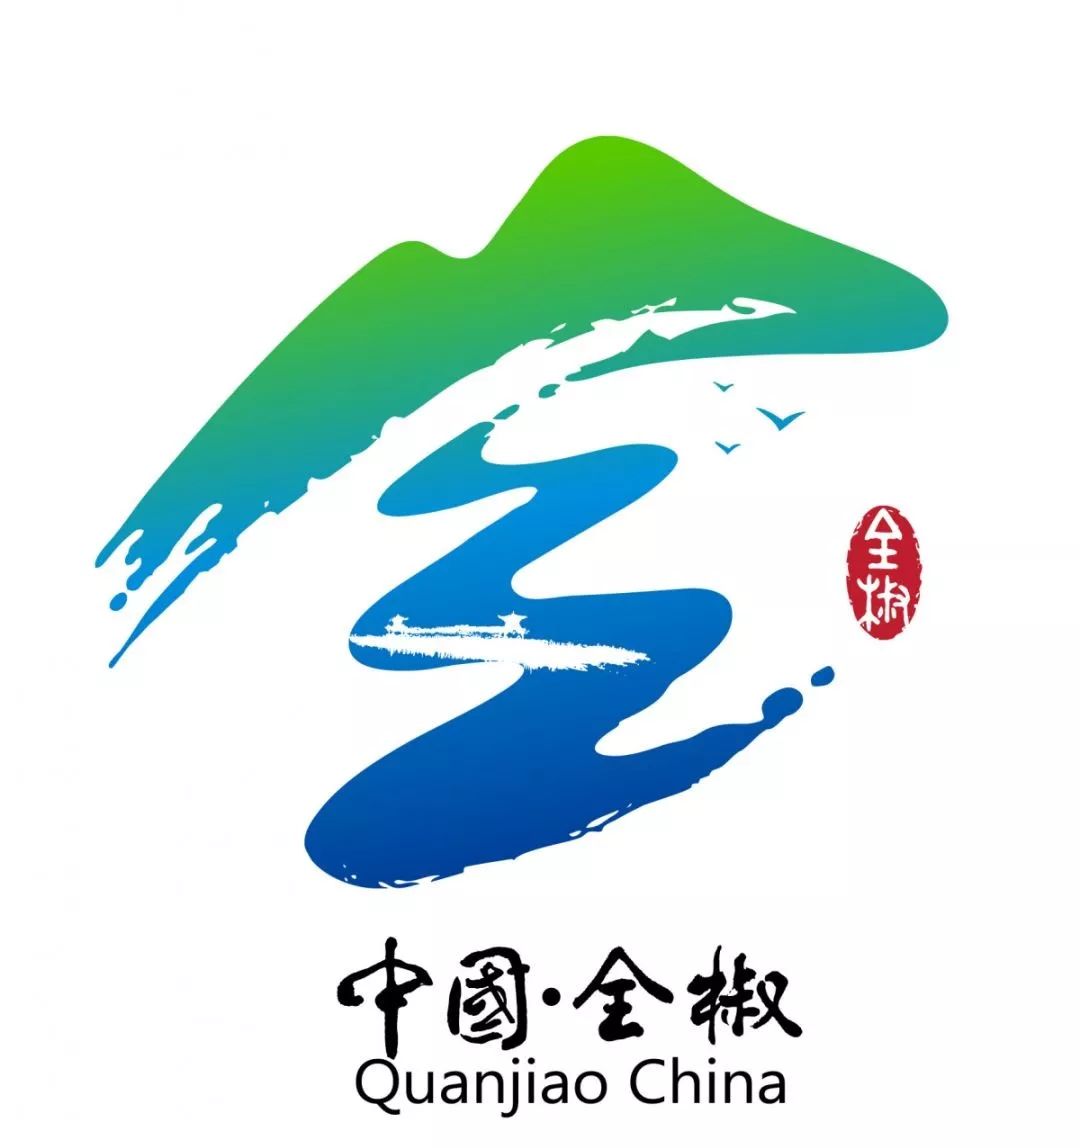 全椒县城市形象宣传语和标识logo正式发布